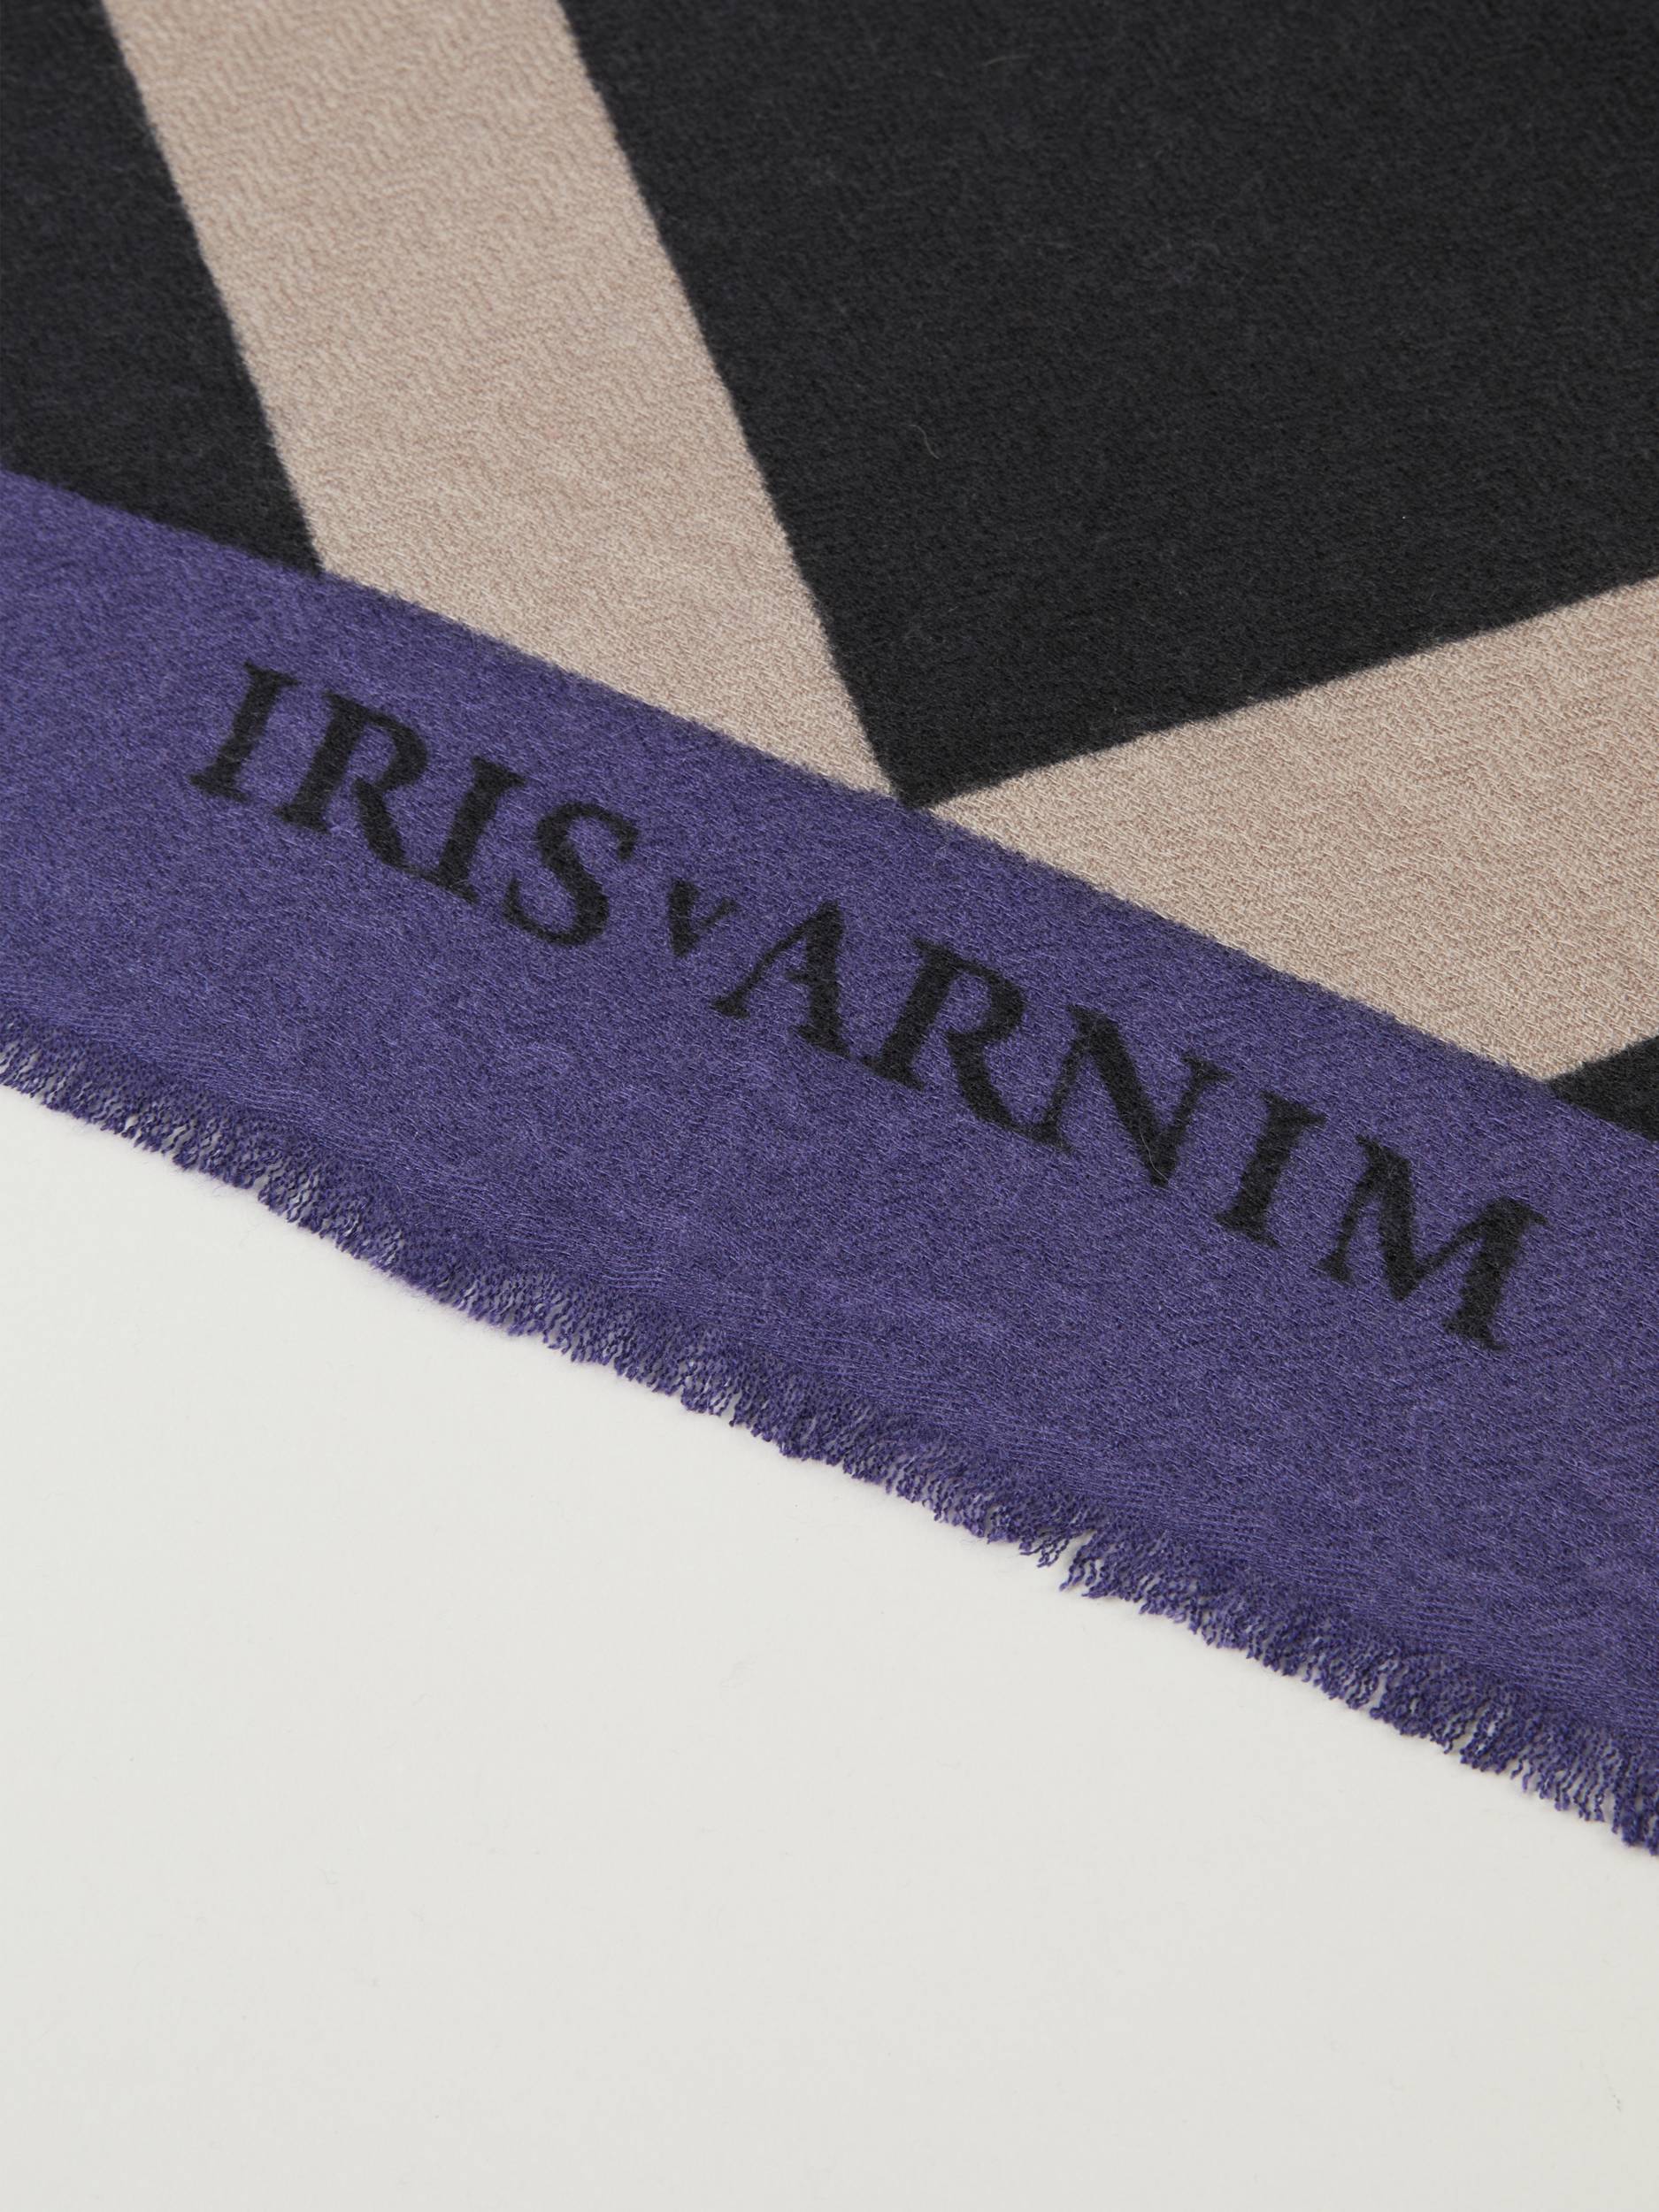 Iris von Arnim - Cashmere-Tuch 'Iris' Violett